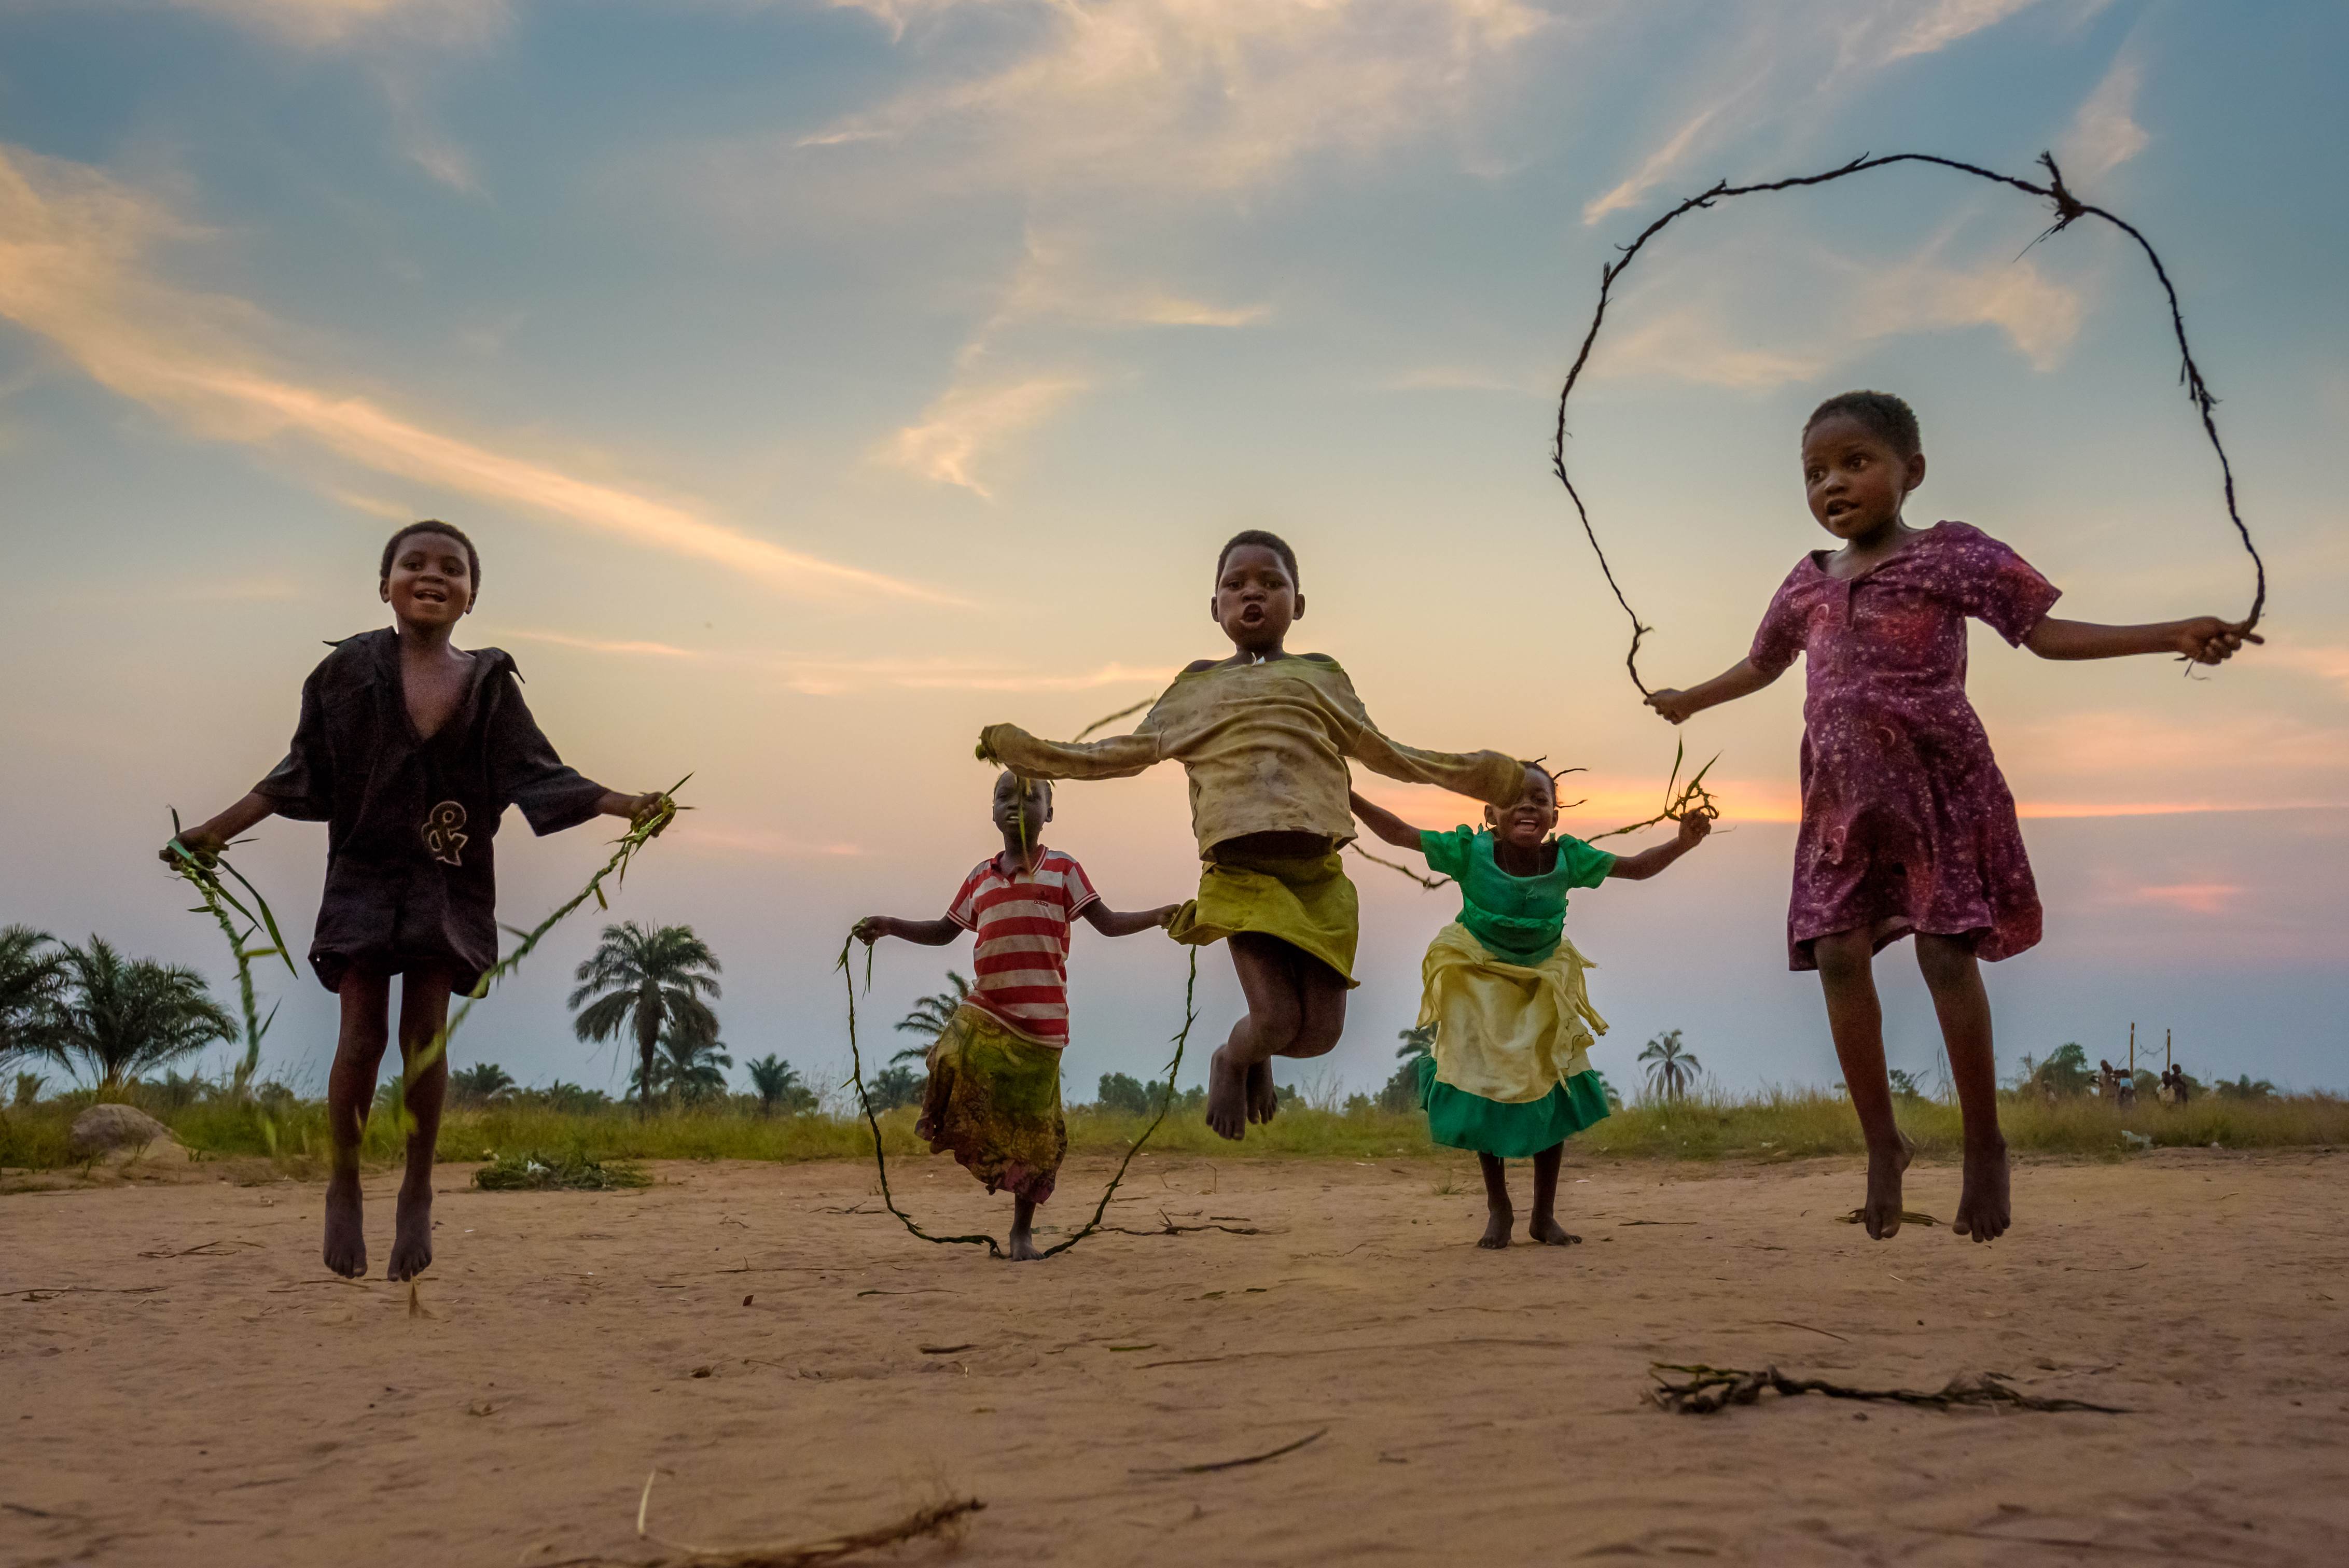 5 bambini si divertono a saltare sullo sfondo di un tramonto in uno spazio a misura di bambino (CFS) nella Repubblica Democratica del Congo